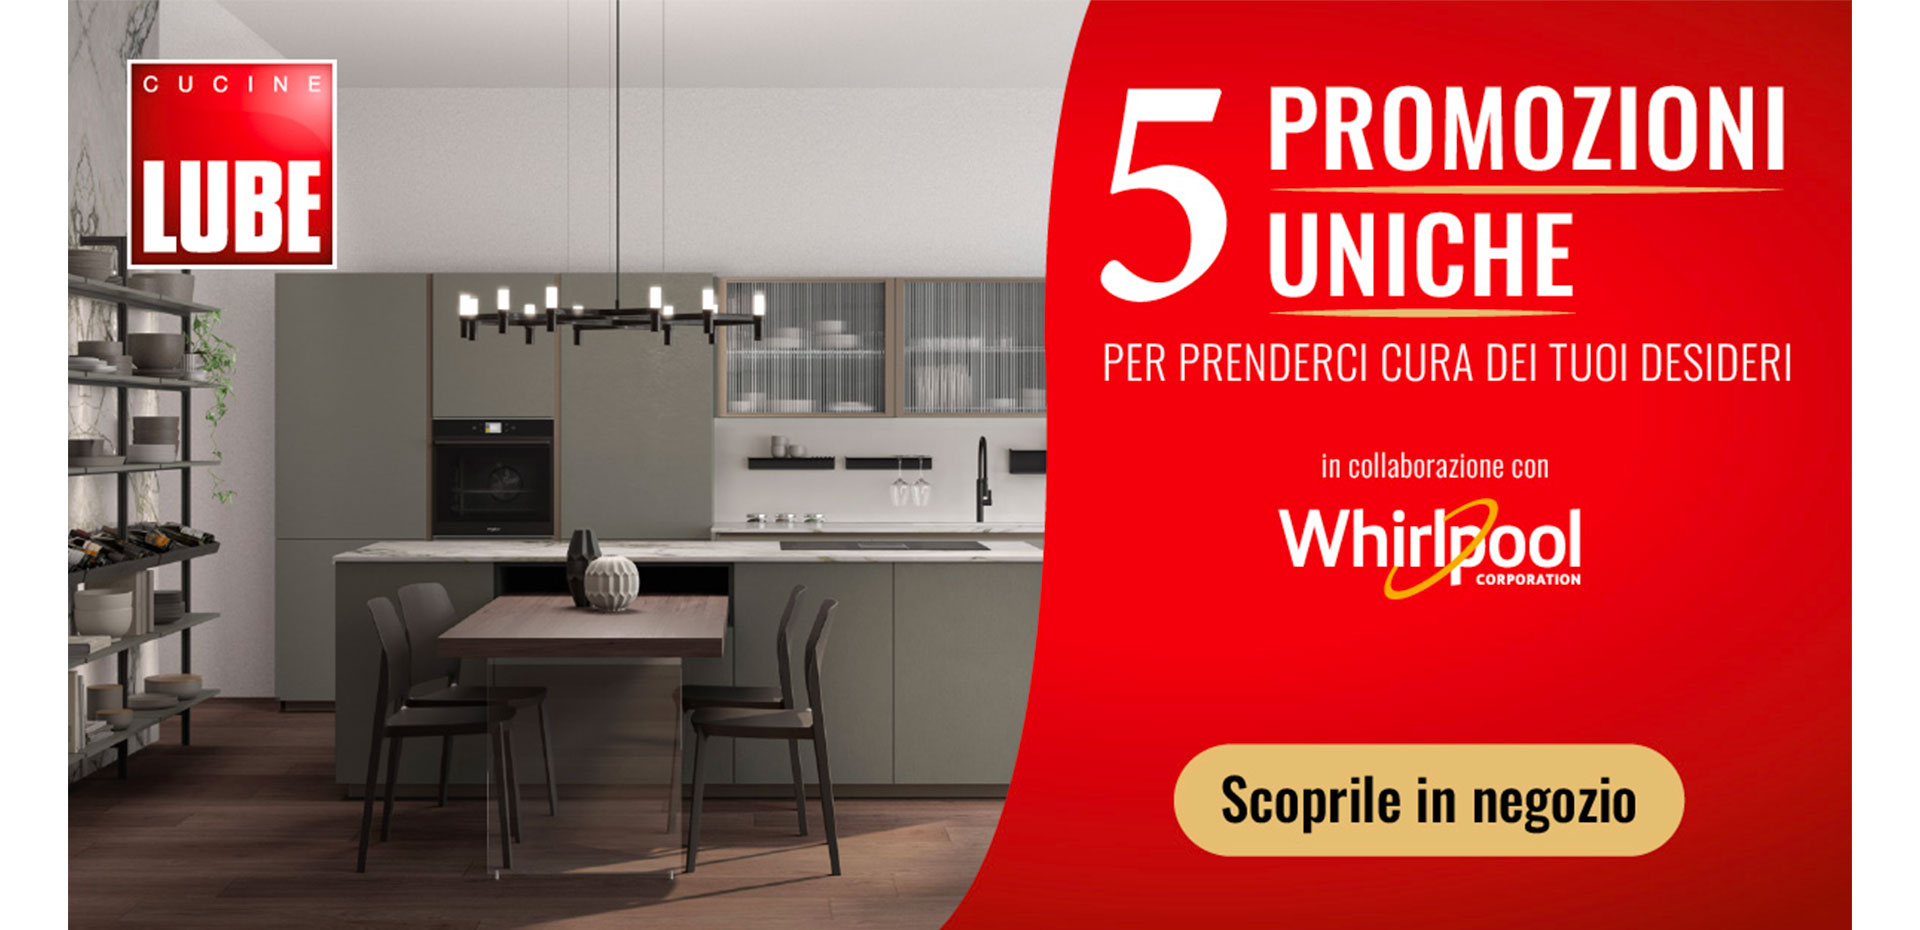 5 promozioni uniche sui modelli Cucine LUBE in collaborazione con Whirlpool. Hai tempo fino al 03 dicembre! - LUBE CREO Store Guidonia (Roma)